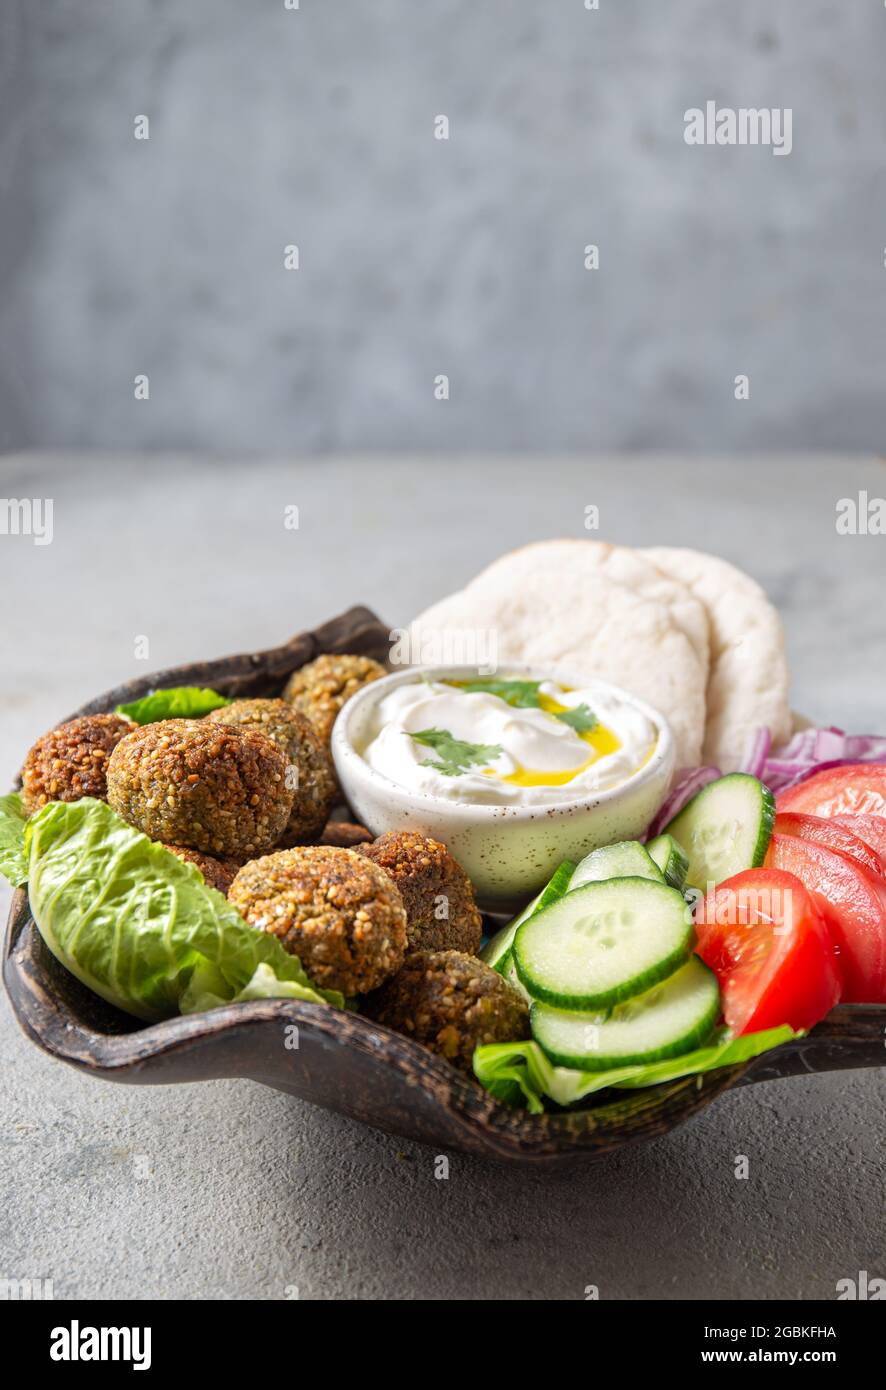 Falafel, légumes frais et pain pita sur plaque d'argile, fond gris Banque D'Images